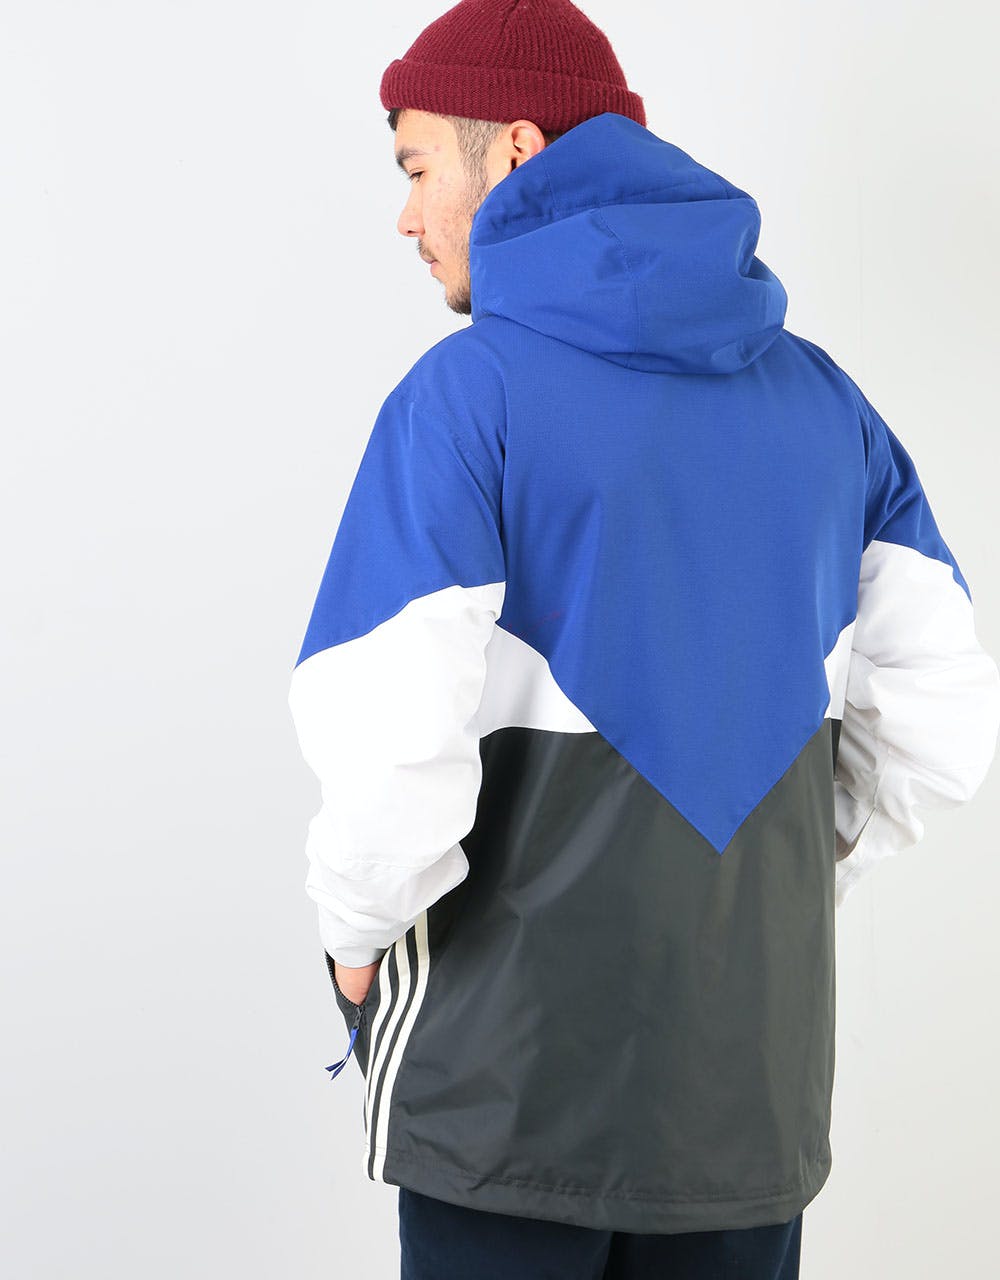 Adidas Premiere Riding 2020 Snowboard Jacket - Active Blue/Carbon/Wht